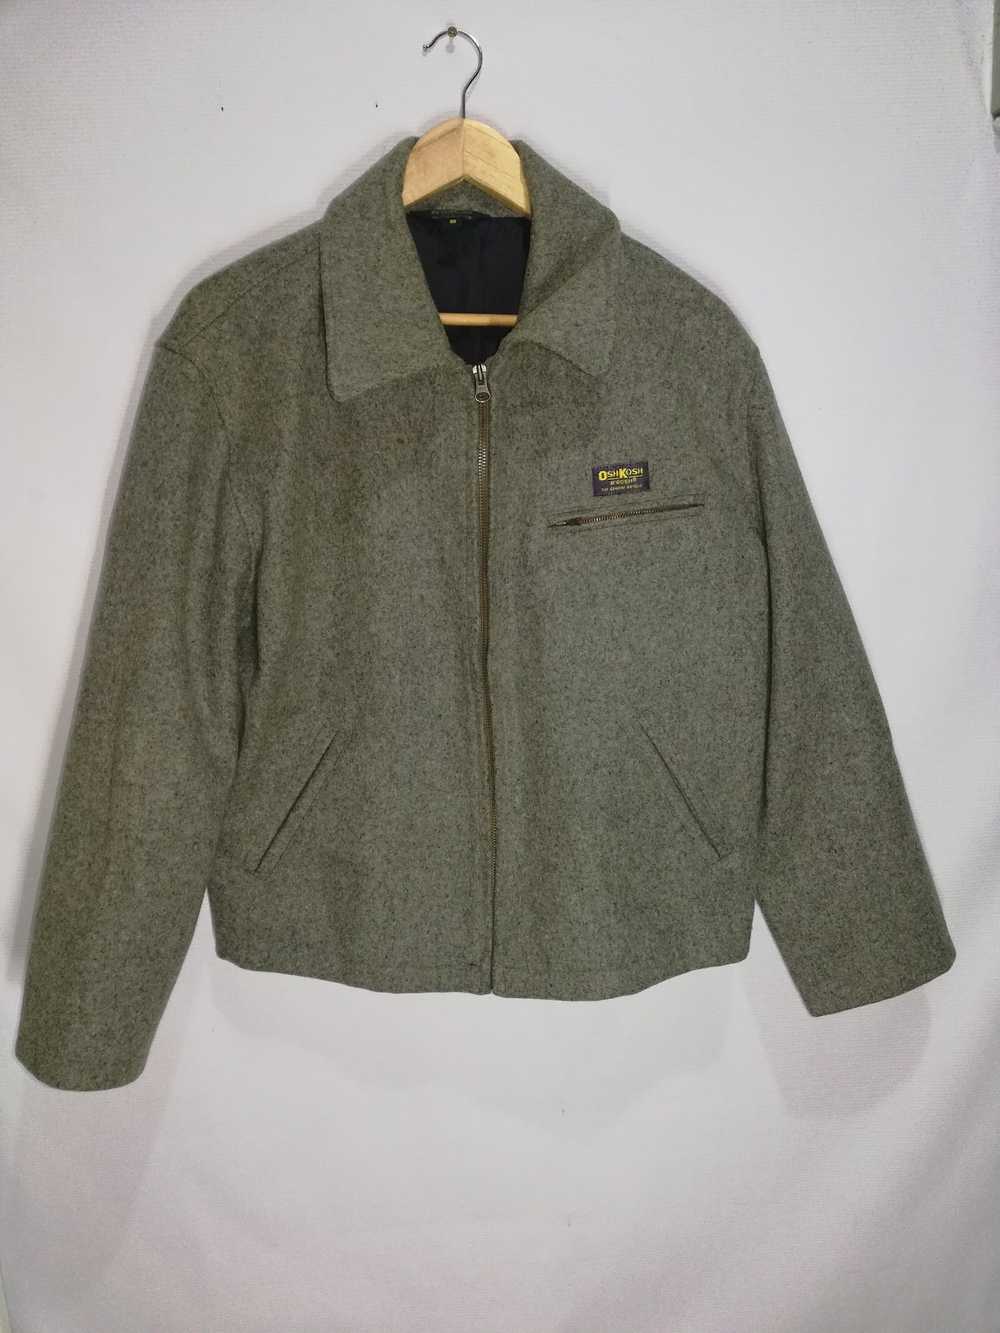 Oshkosh vintage oshkosh zipper wool jacket - image 1